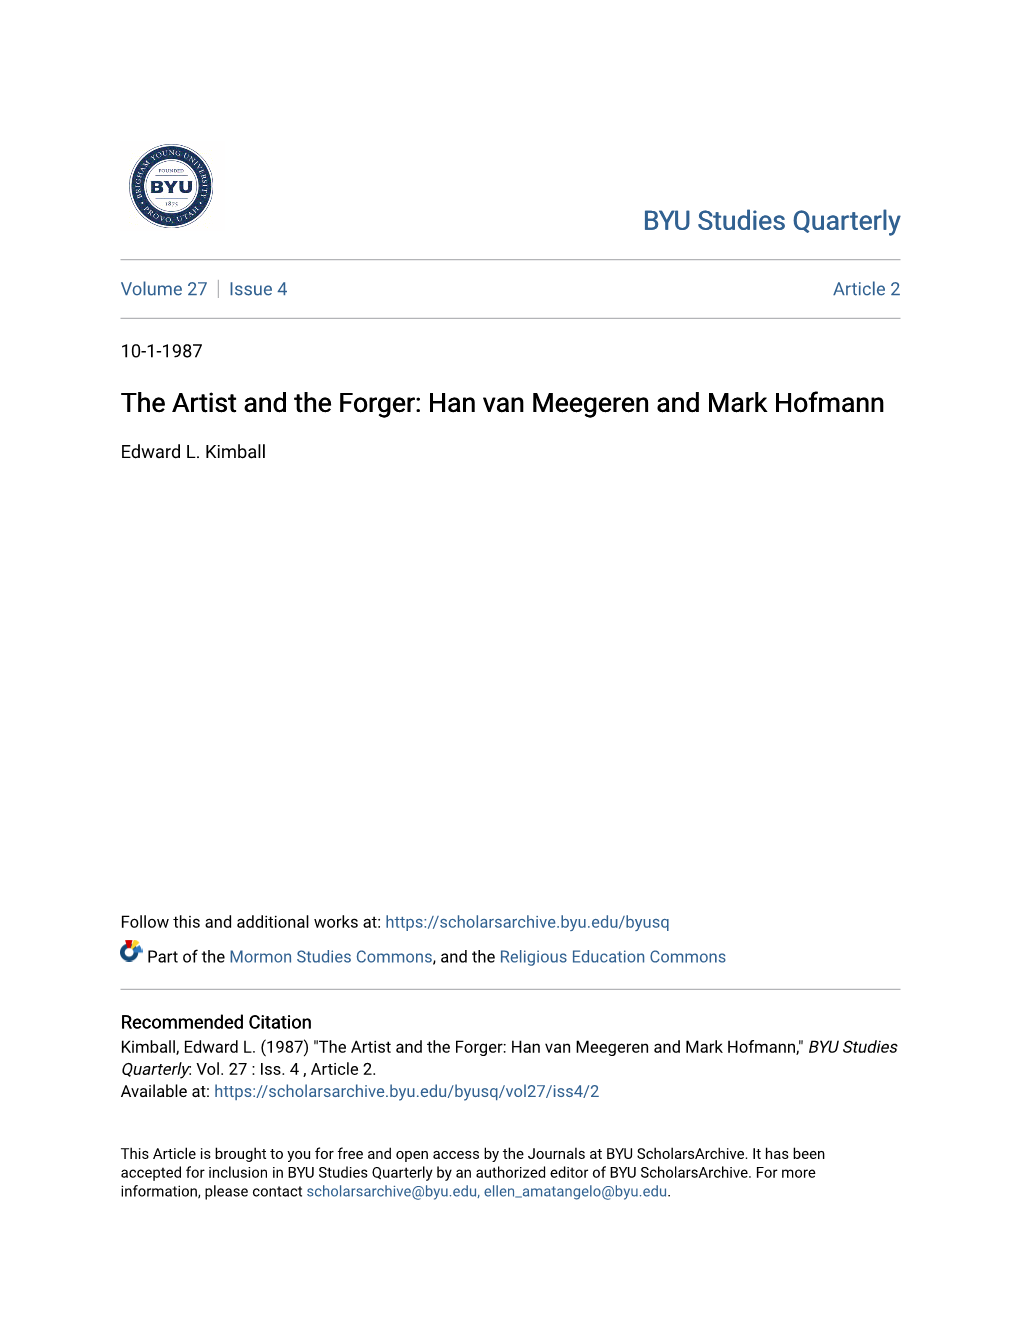 Han Van Meegeren and Mark Hofmann